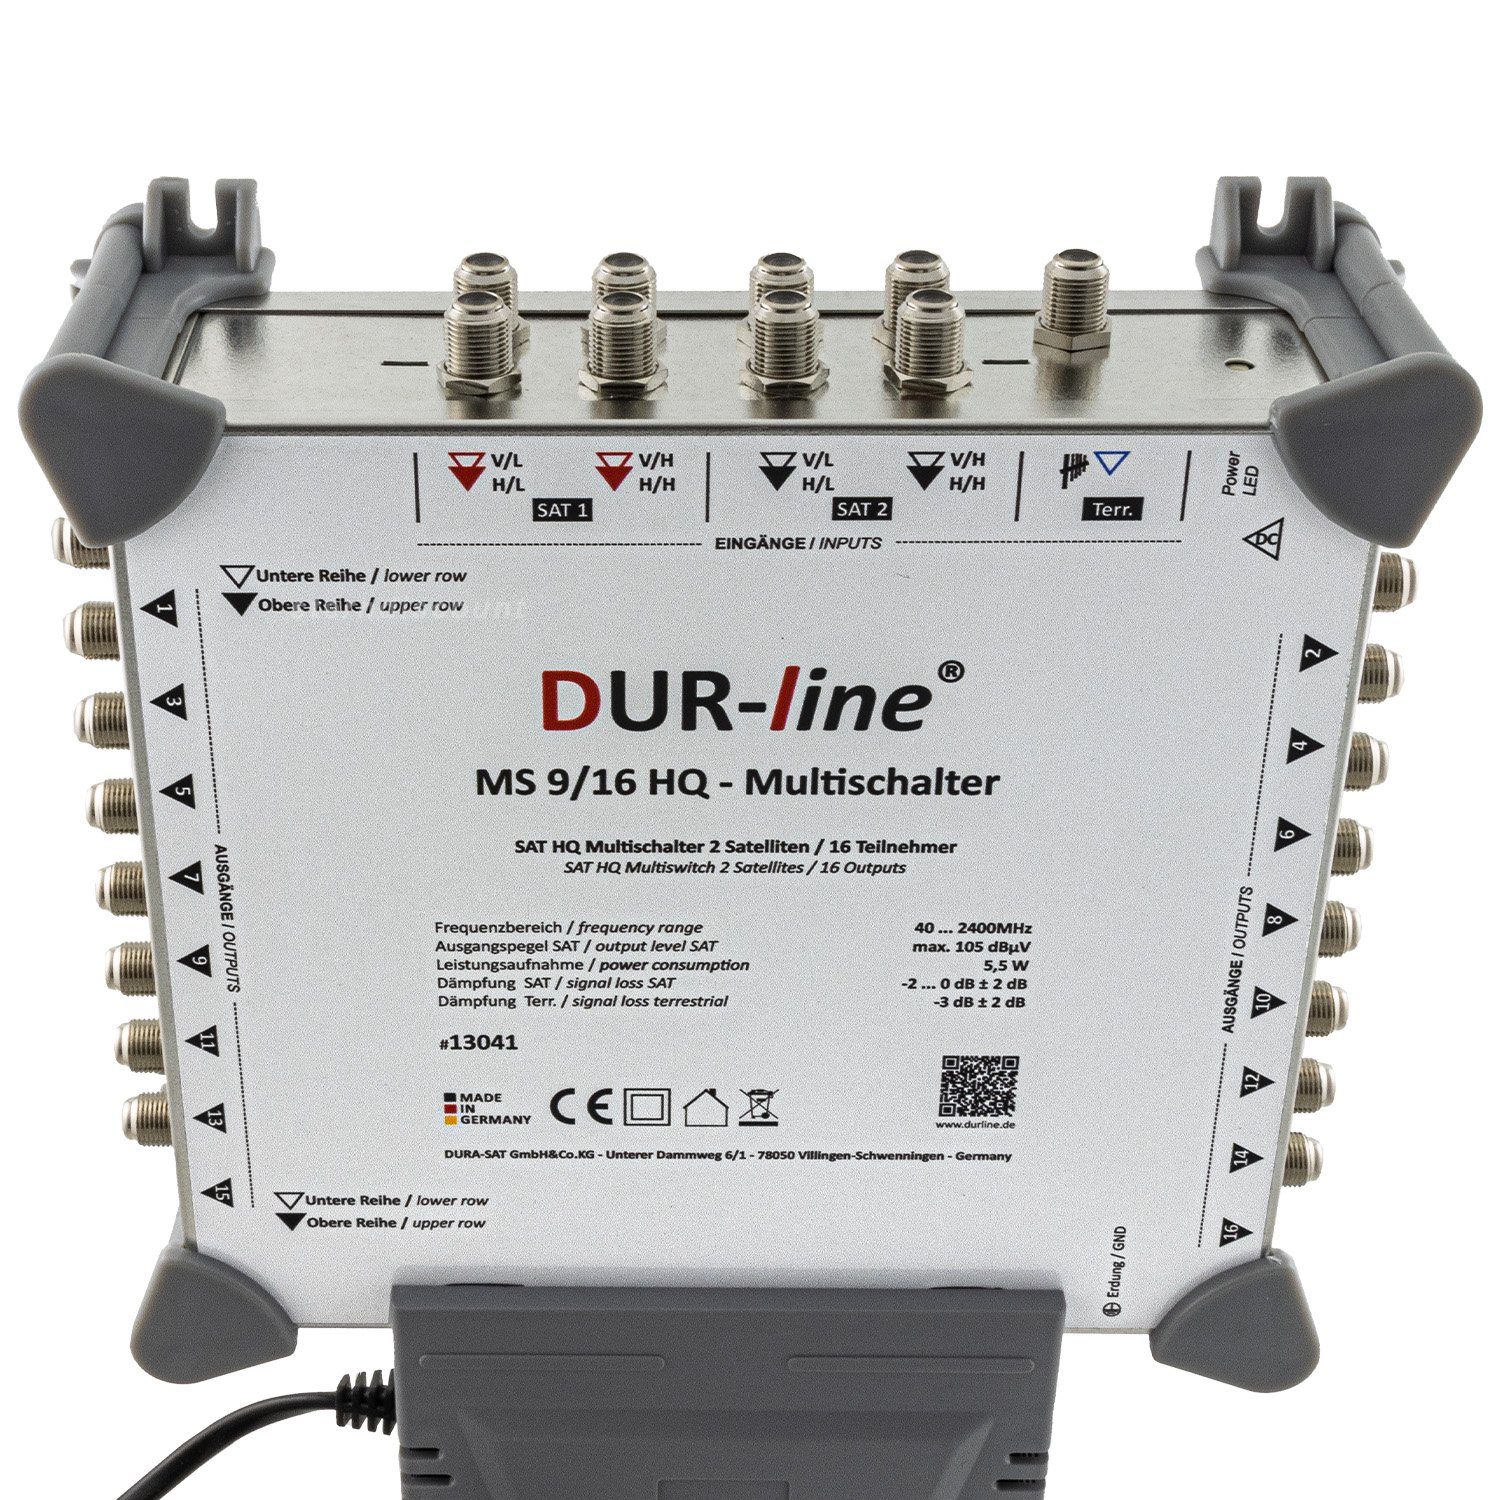 Dur-line-MS-9-16-Multischalter-fuer-16-teilnehmer